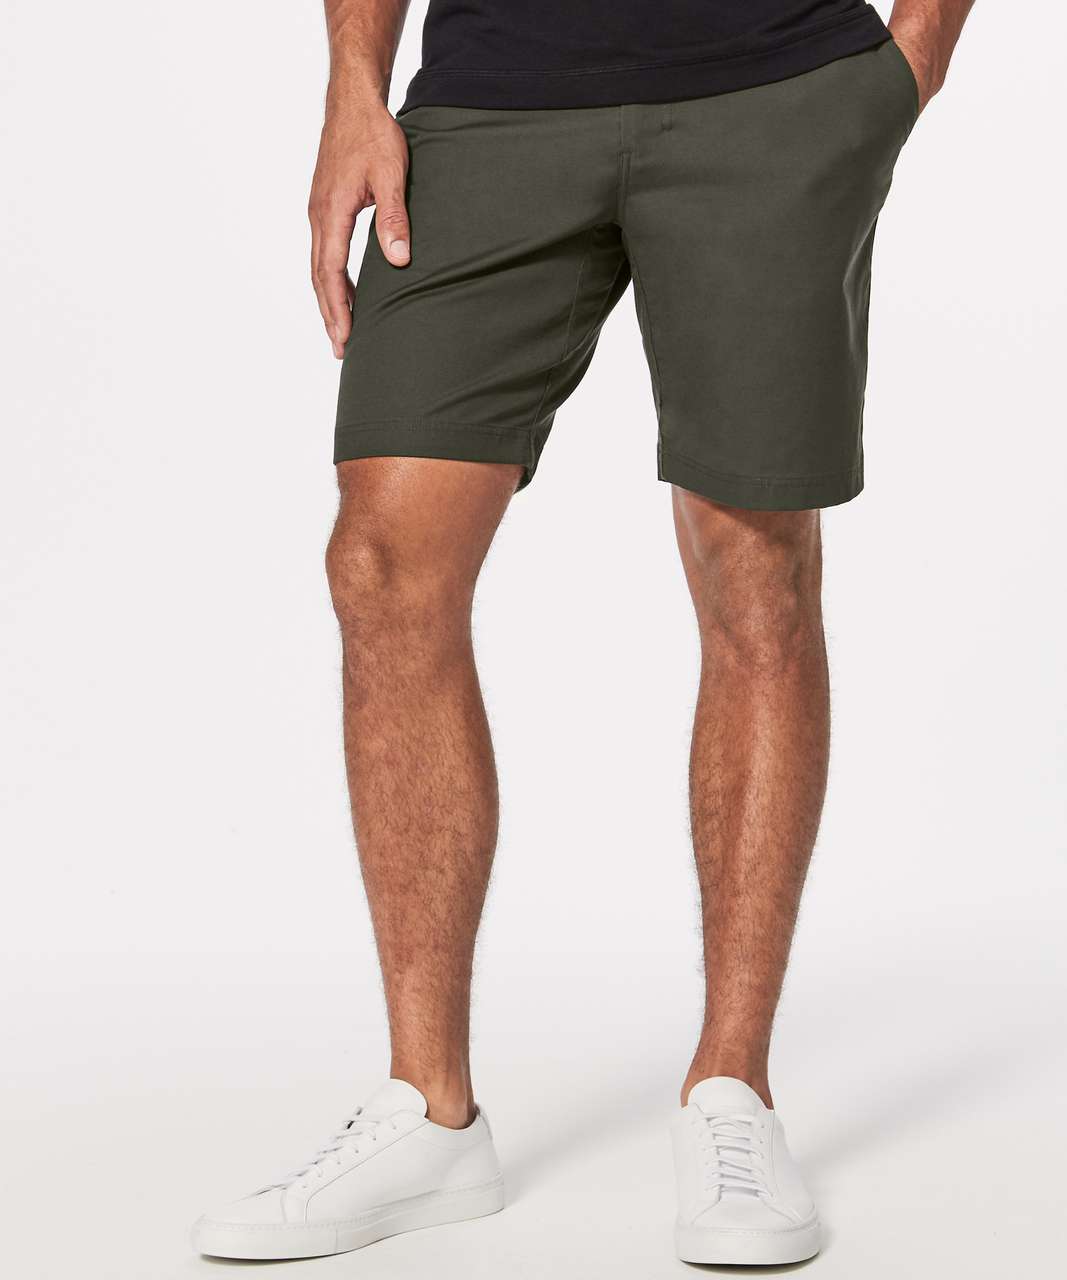 lululemon khaki shorts